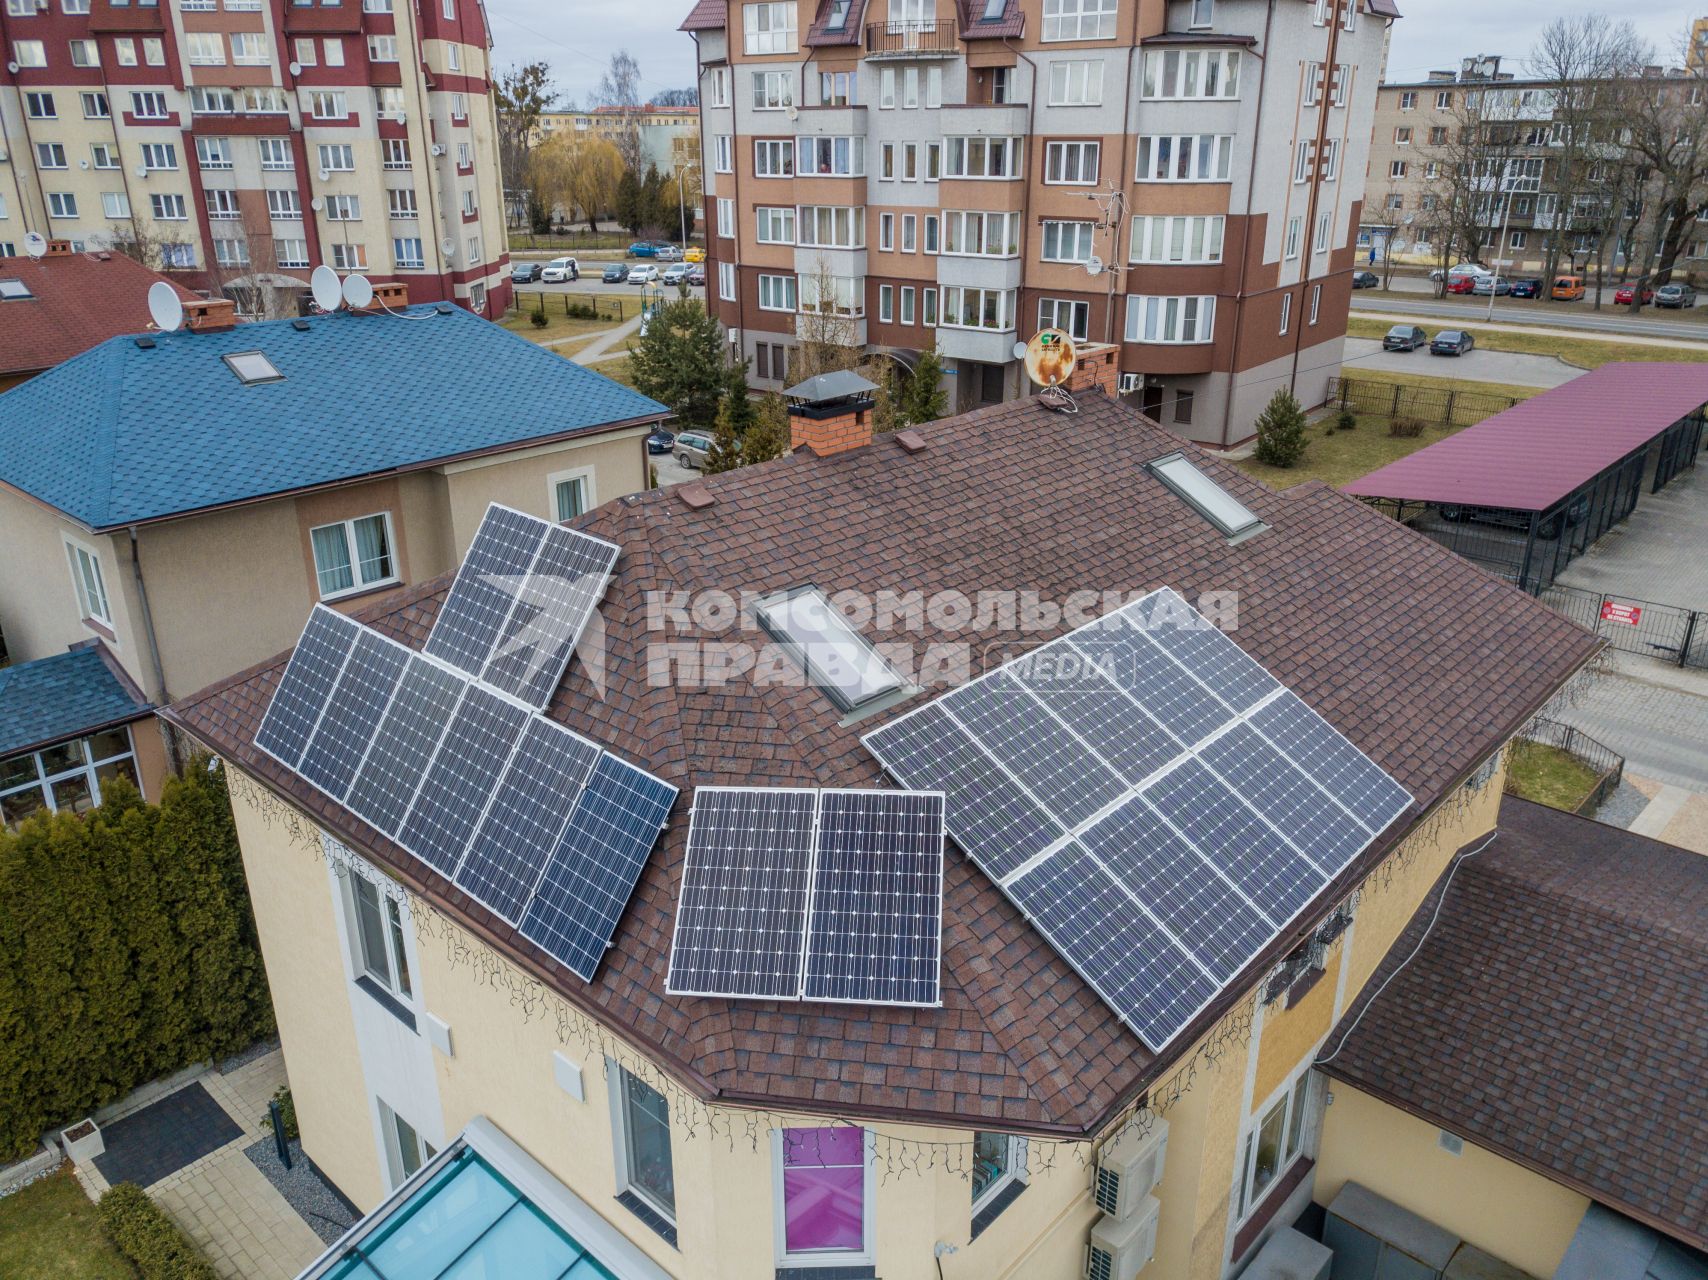 Калининград. Дом предпринимателя Сергея Рыжикова, на крыше которого установлены солнечные батареи.